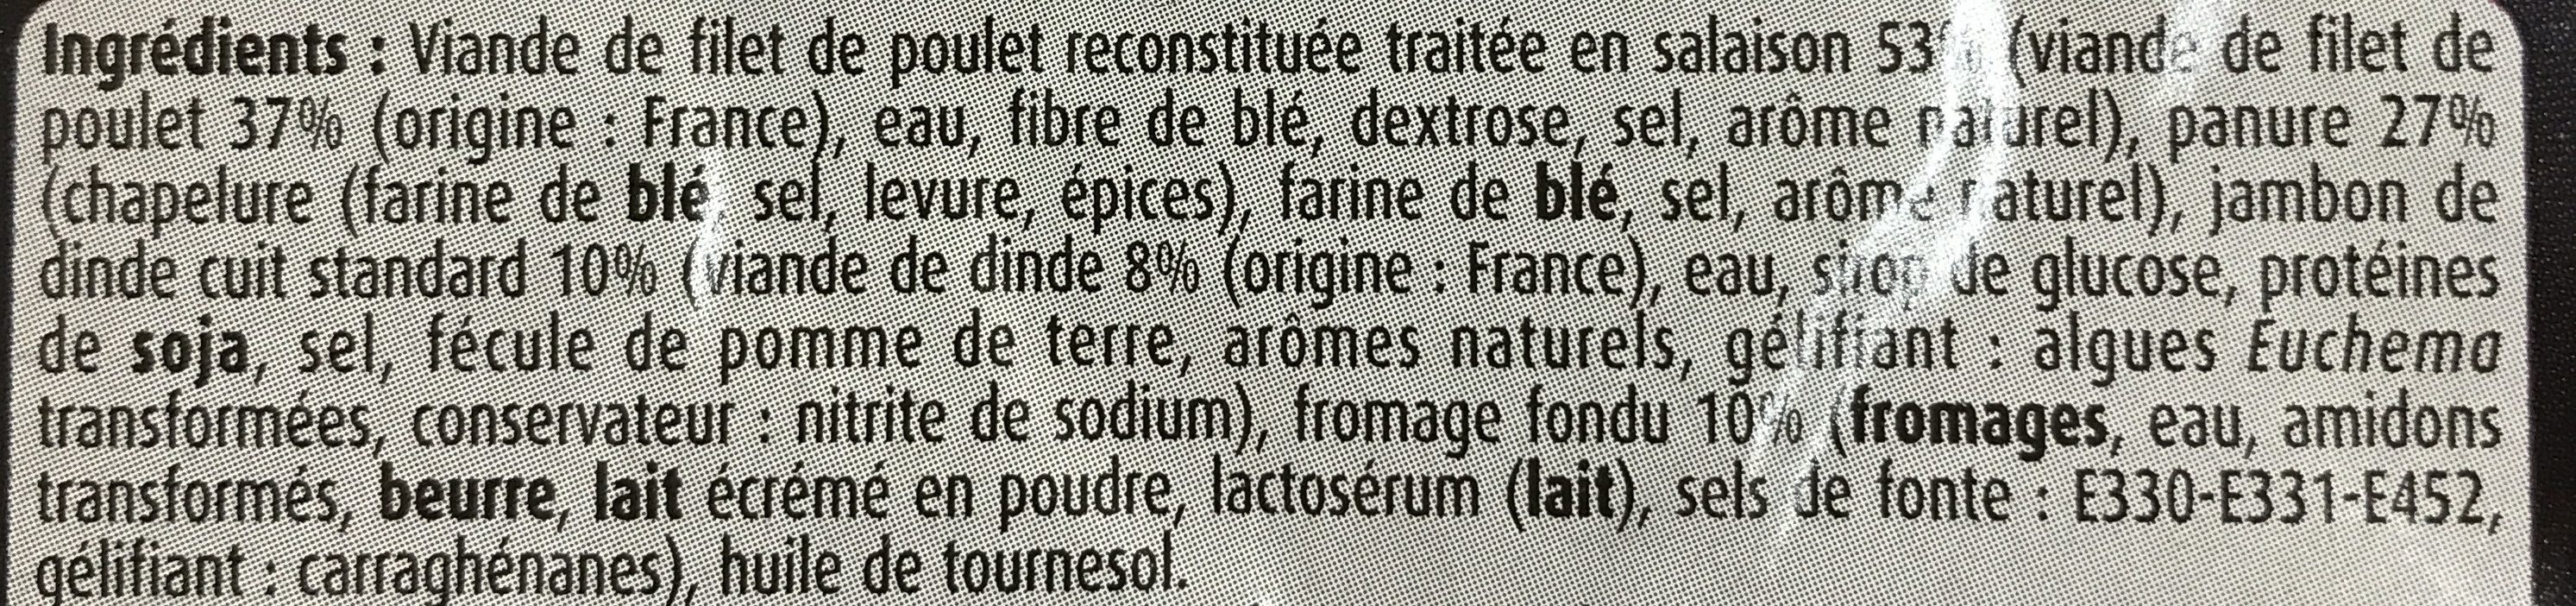 Escalope cordon bleu -25% sel, 400g - Ingrédients